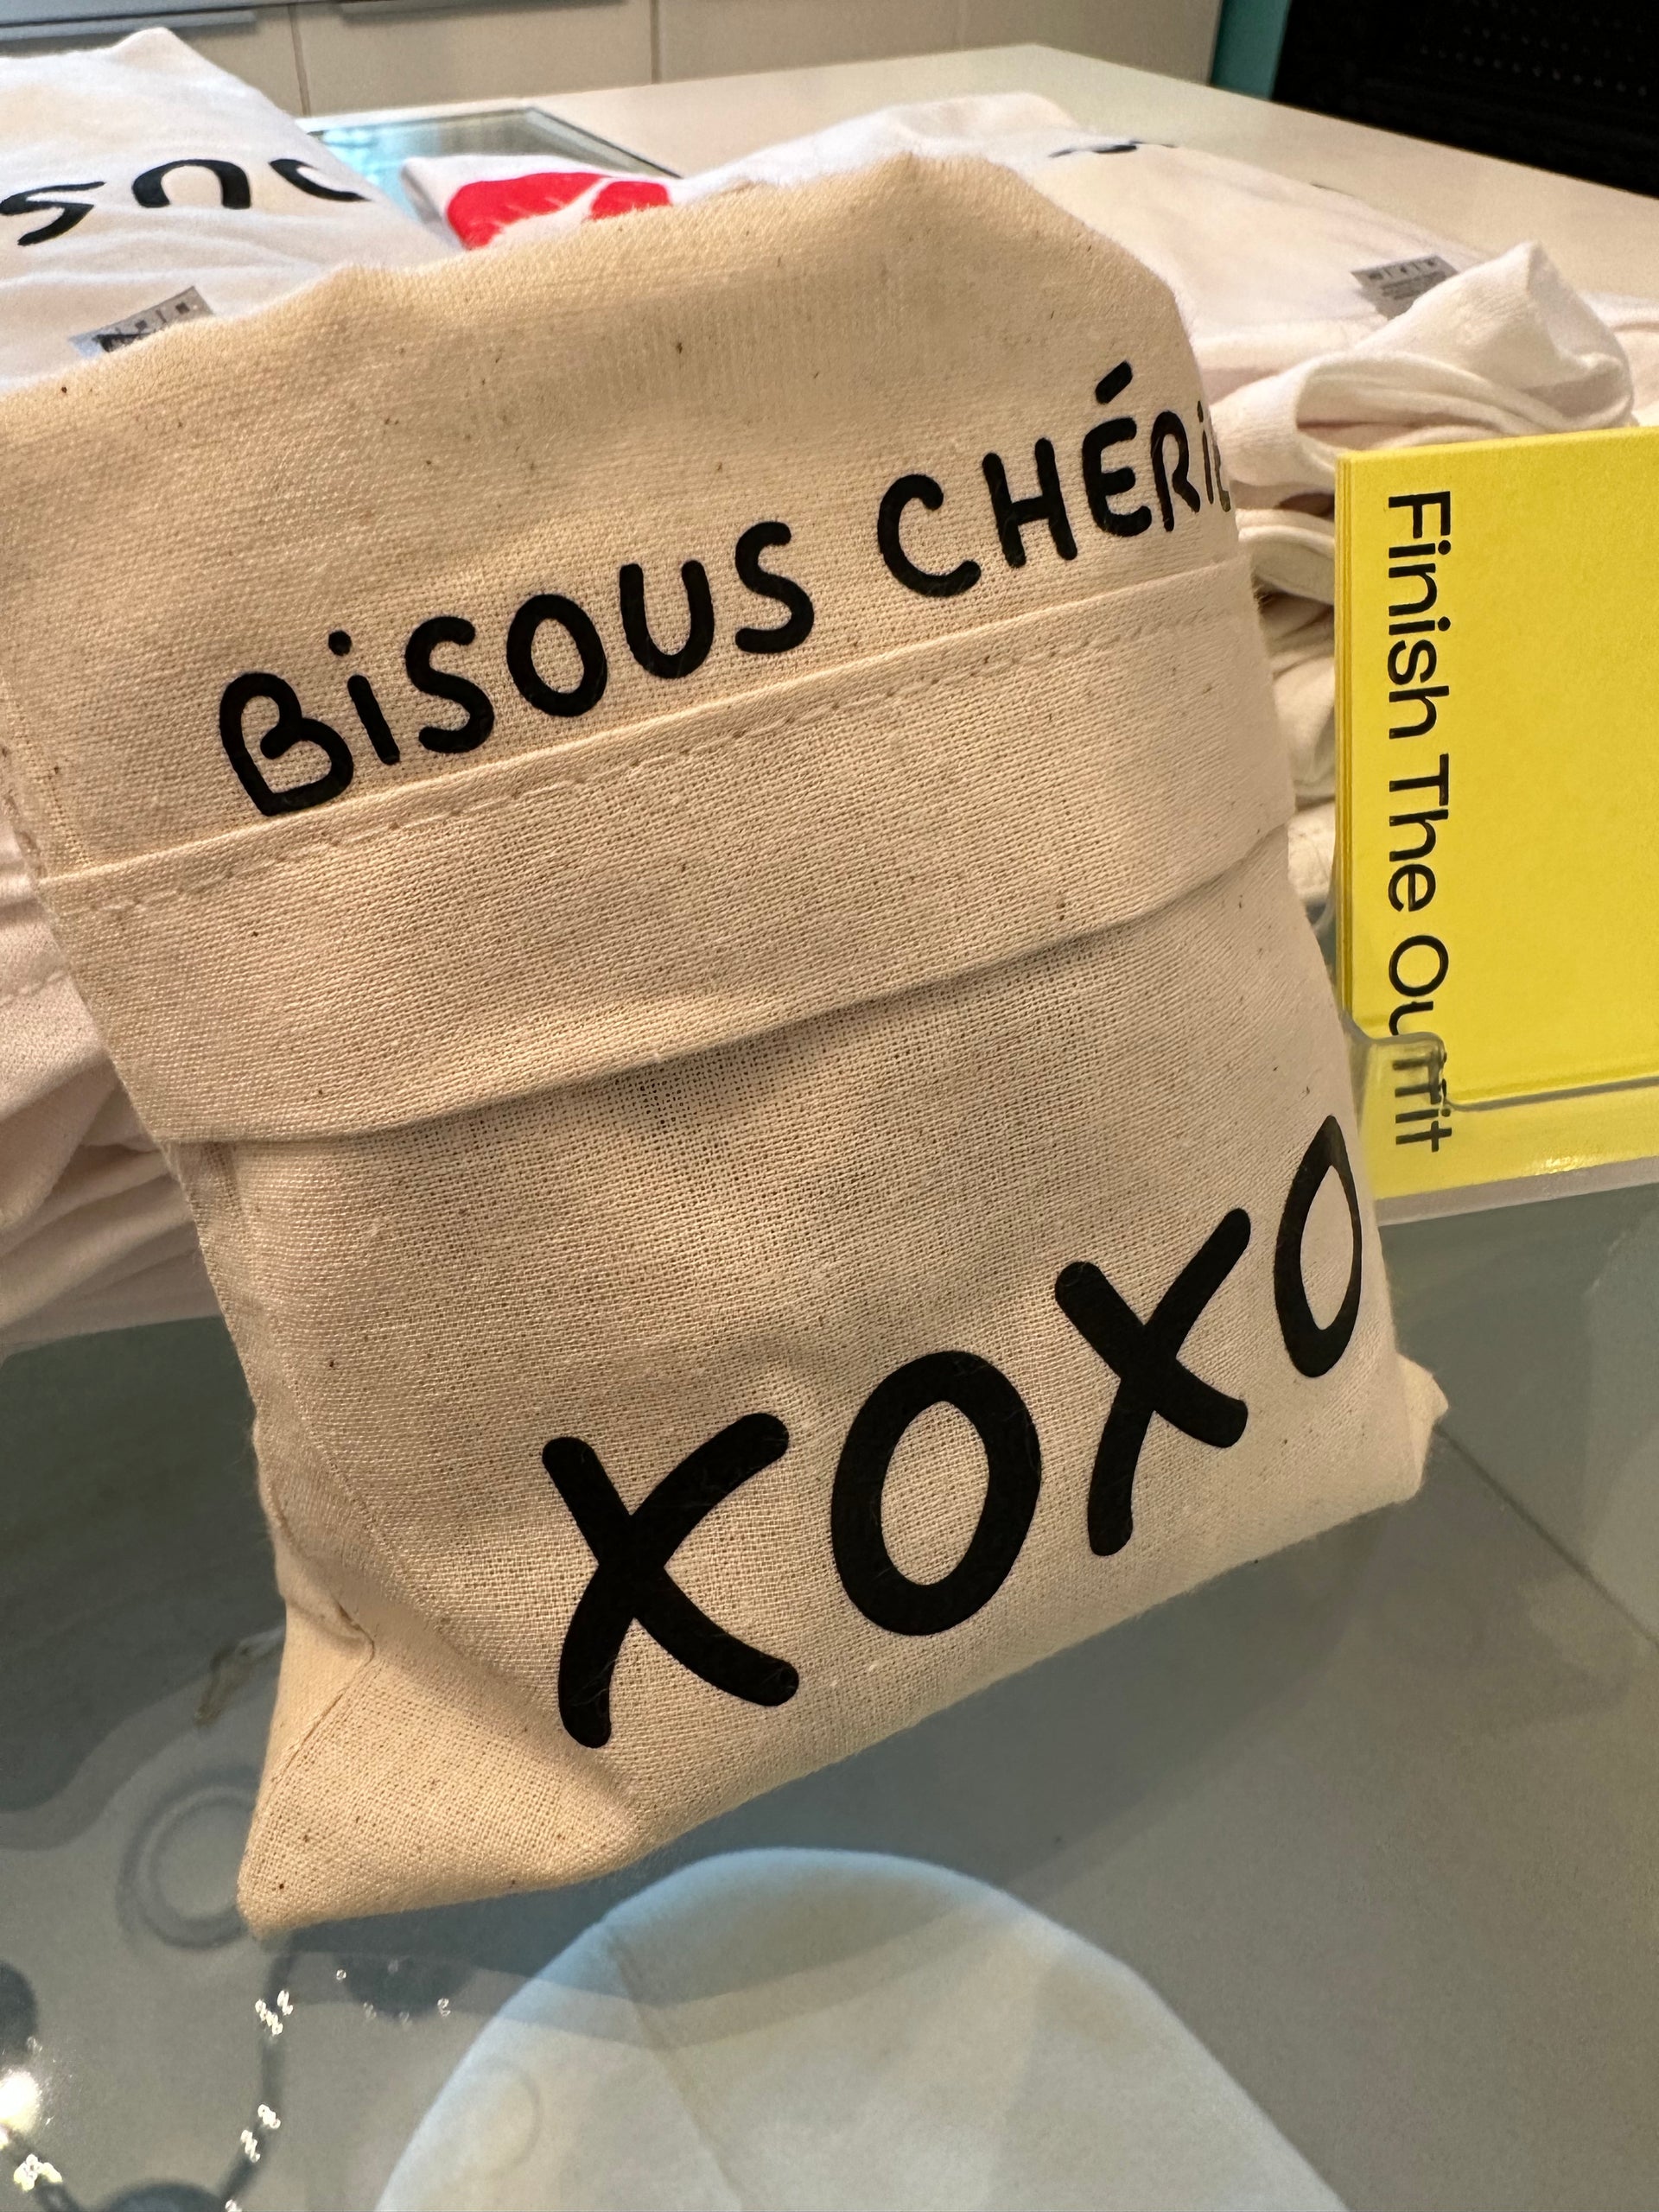 Chapitre 2- Bisous Cherie- Bag